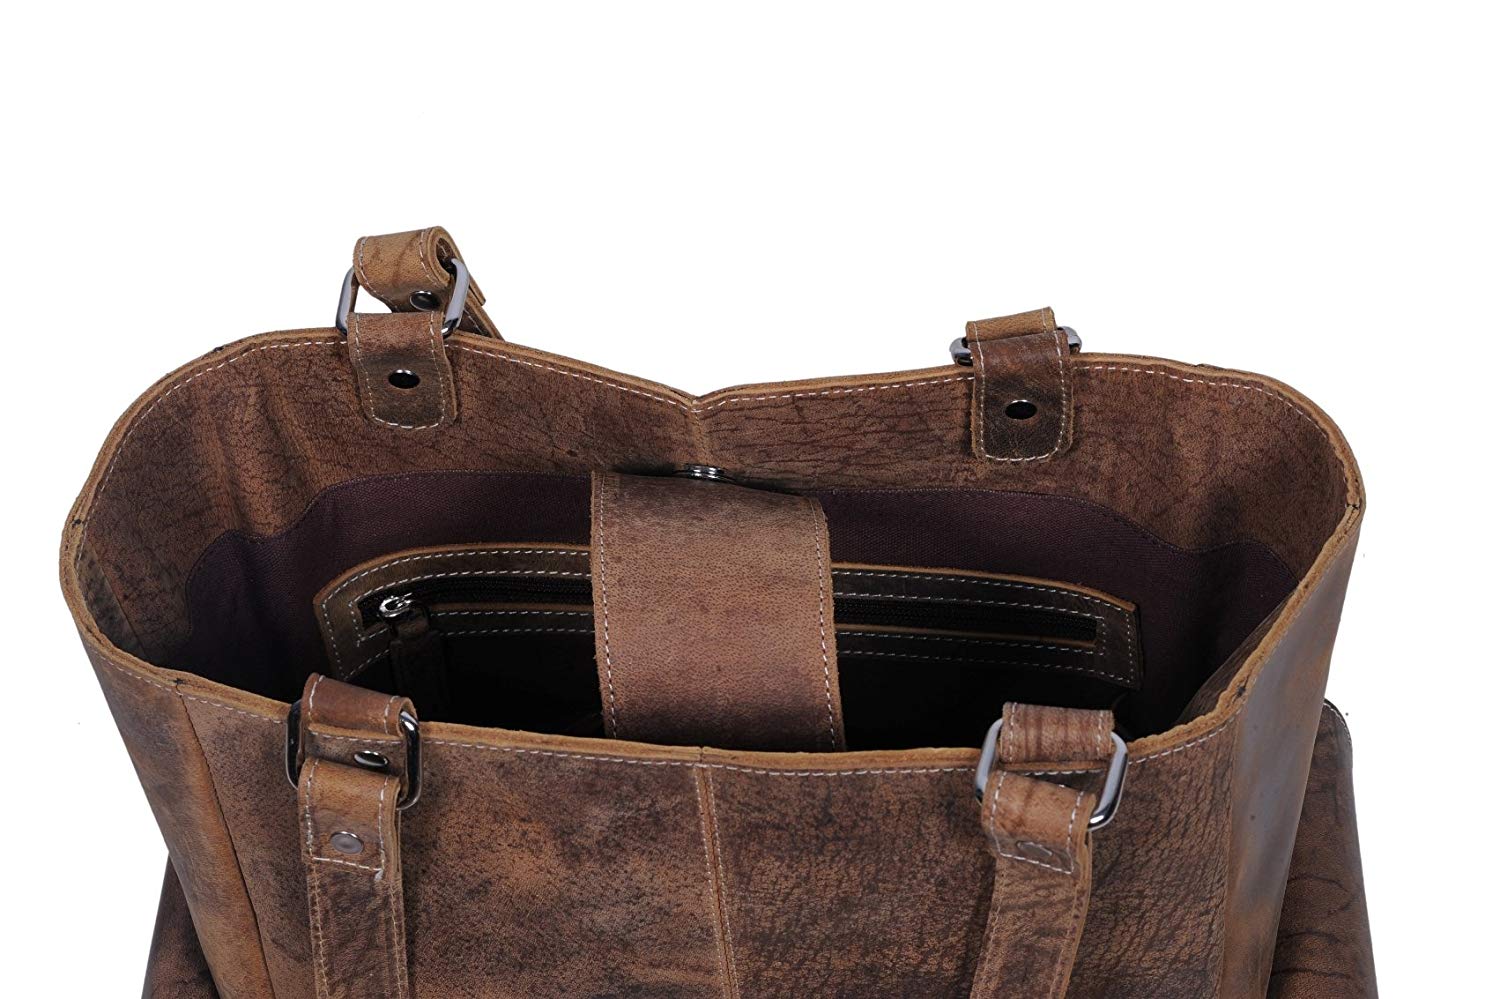 KomalC Genuine Soft Chicago Buff Leather Tote Bag Elegant Shopper Shoulder  Bag